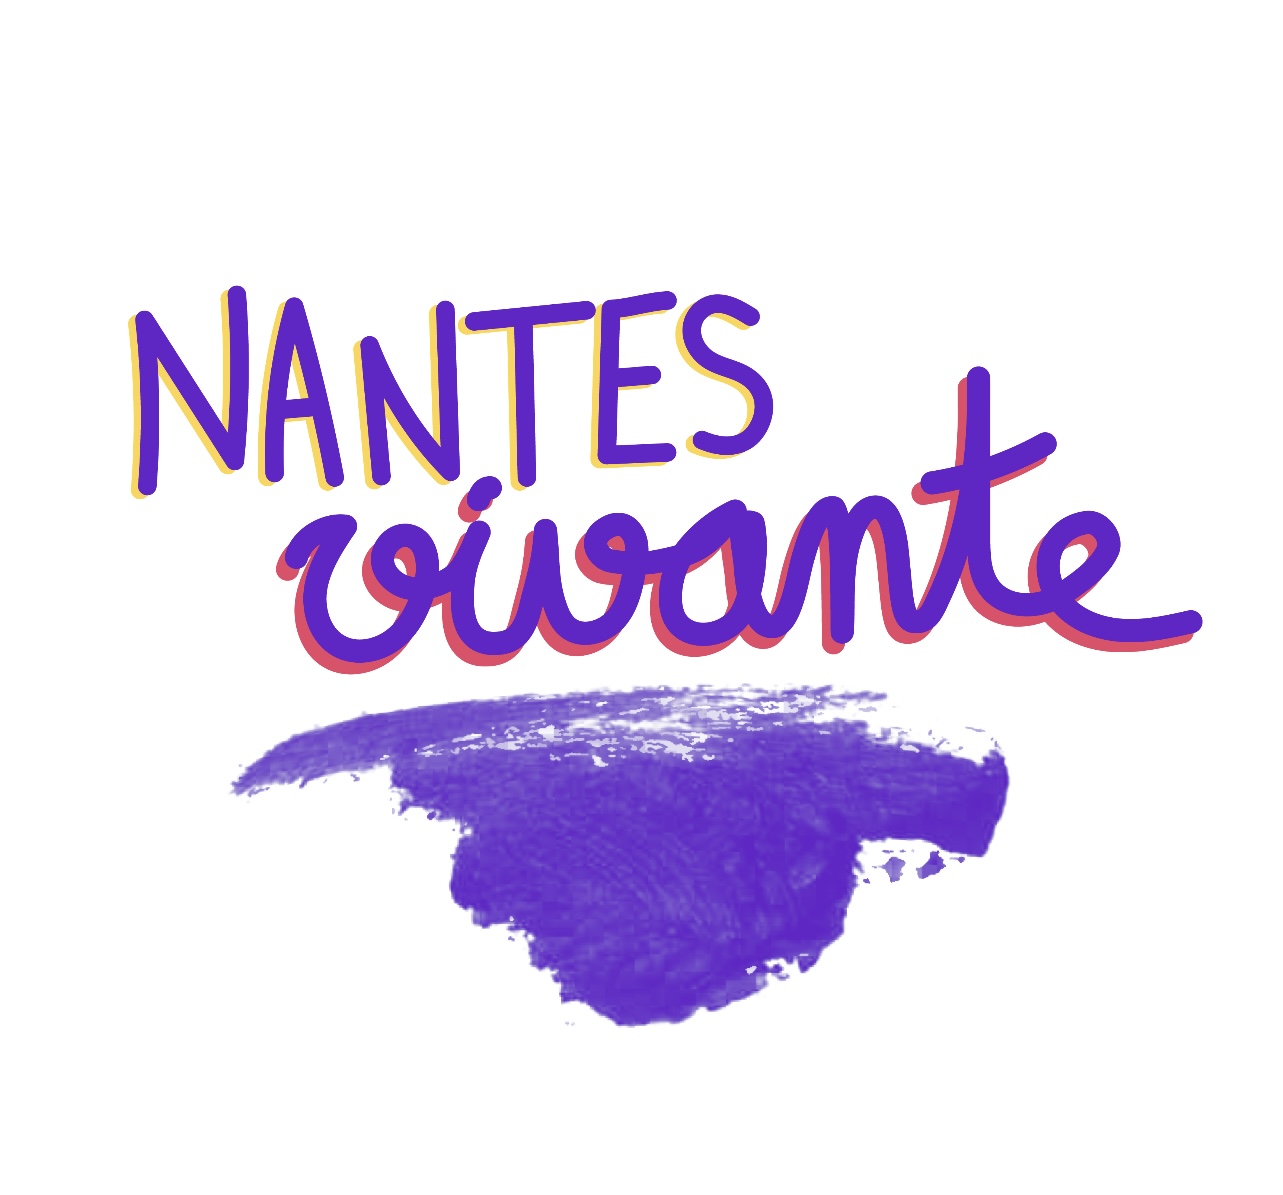 Nantes Vivante (NV)